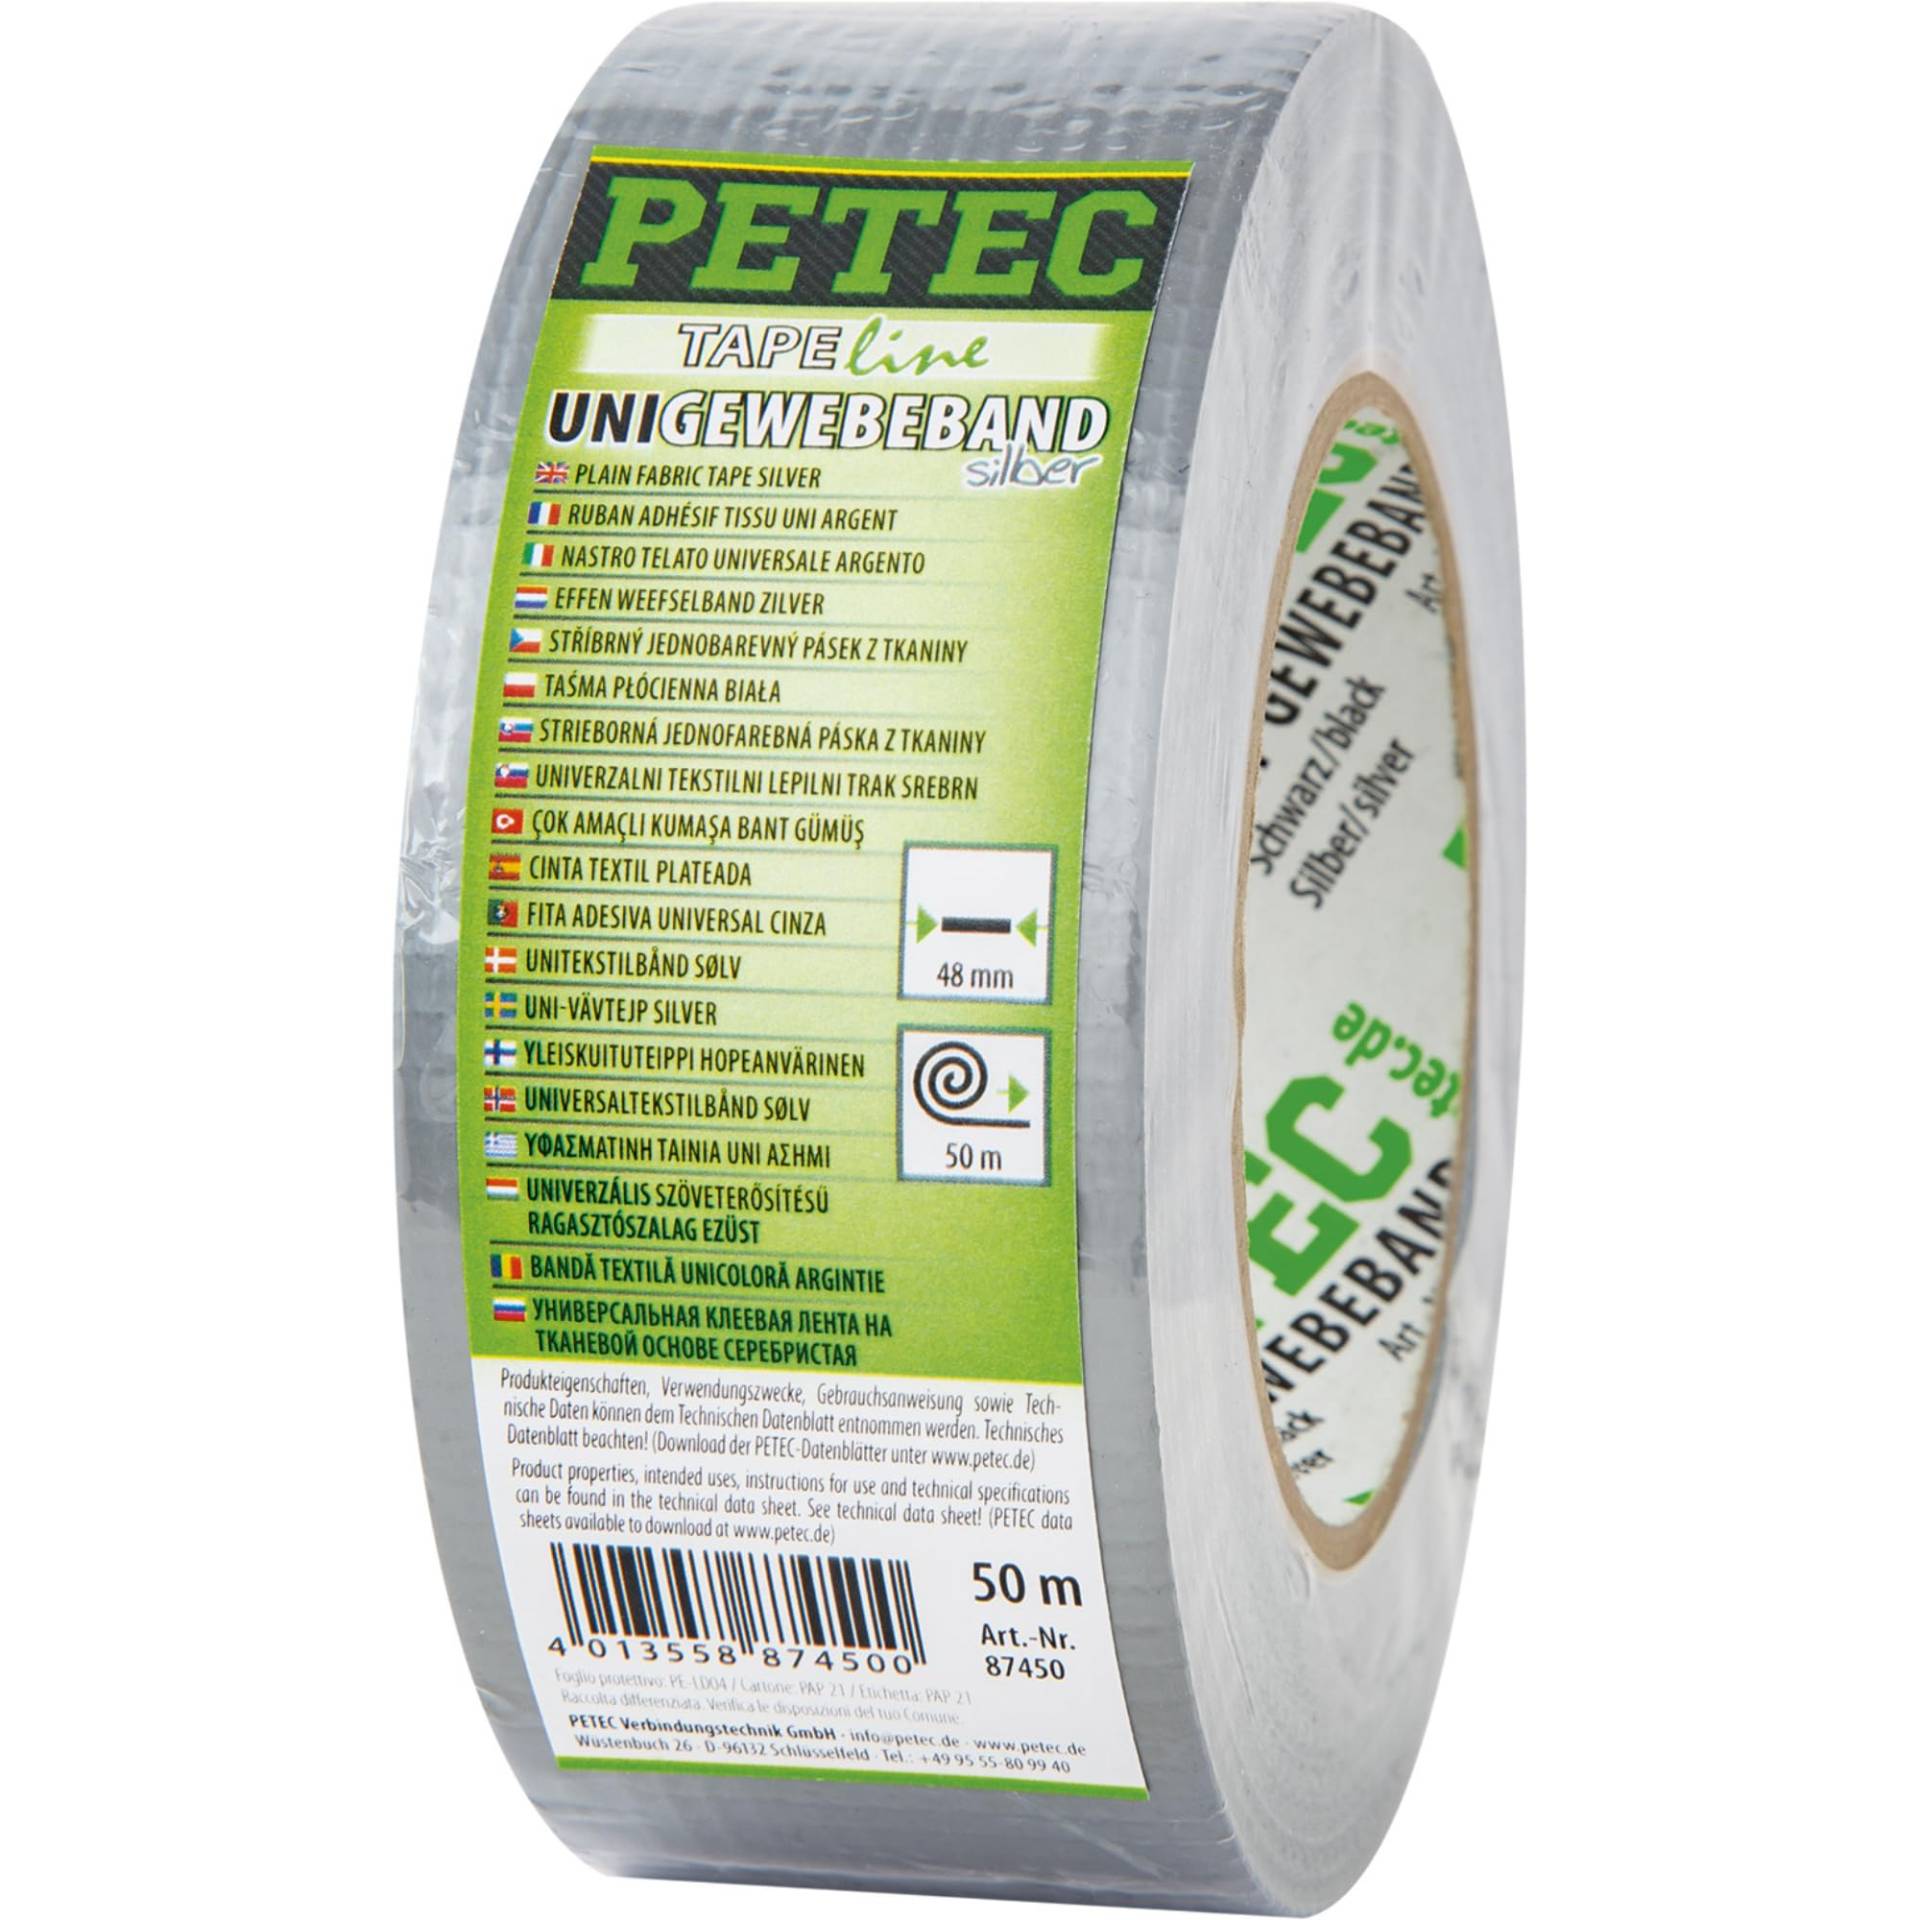 PETEC Uni-Gewebeband silber 50mx48mm, Gewebeverstärktes Tape zum reparieren, befestigen, bündeln & verstärken. Gewebereparatur-Klebeband 87450 von PETEC